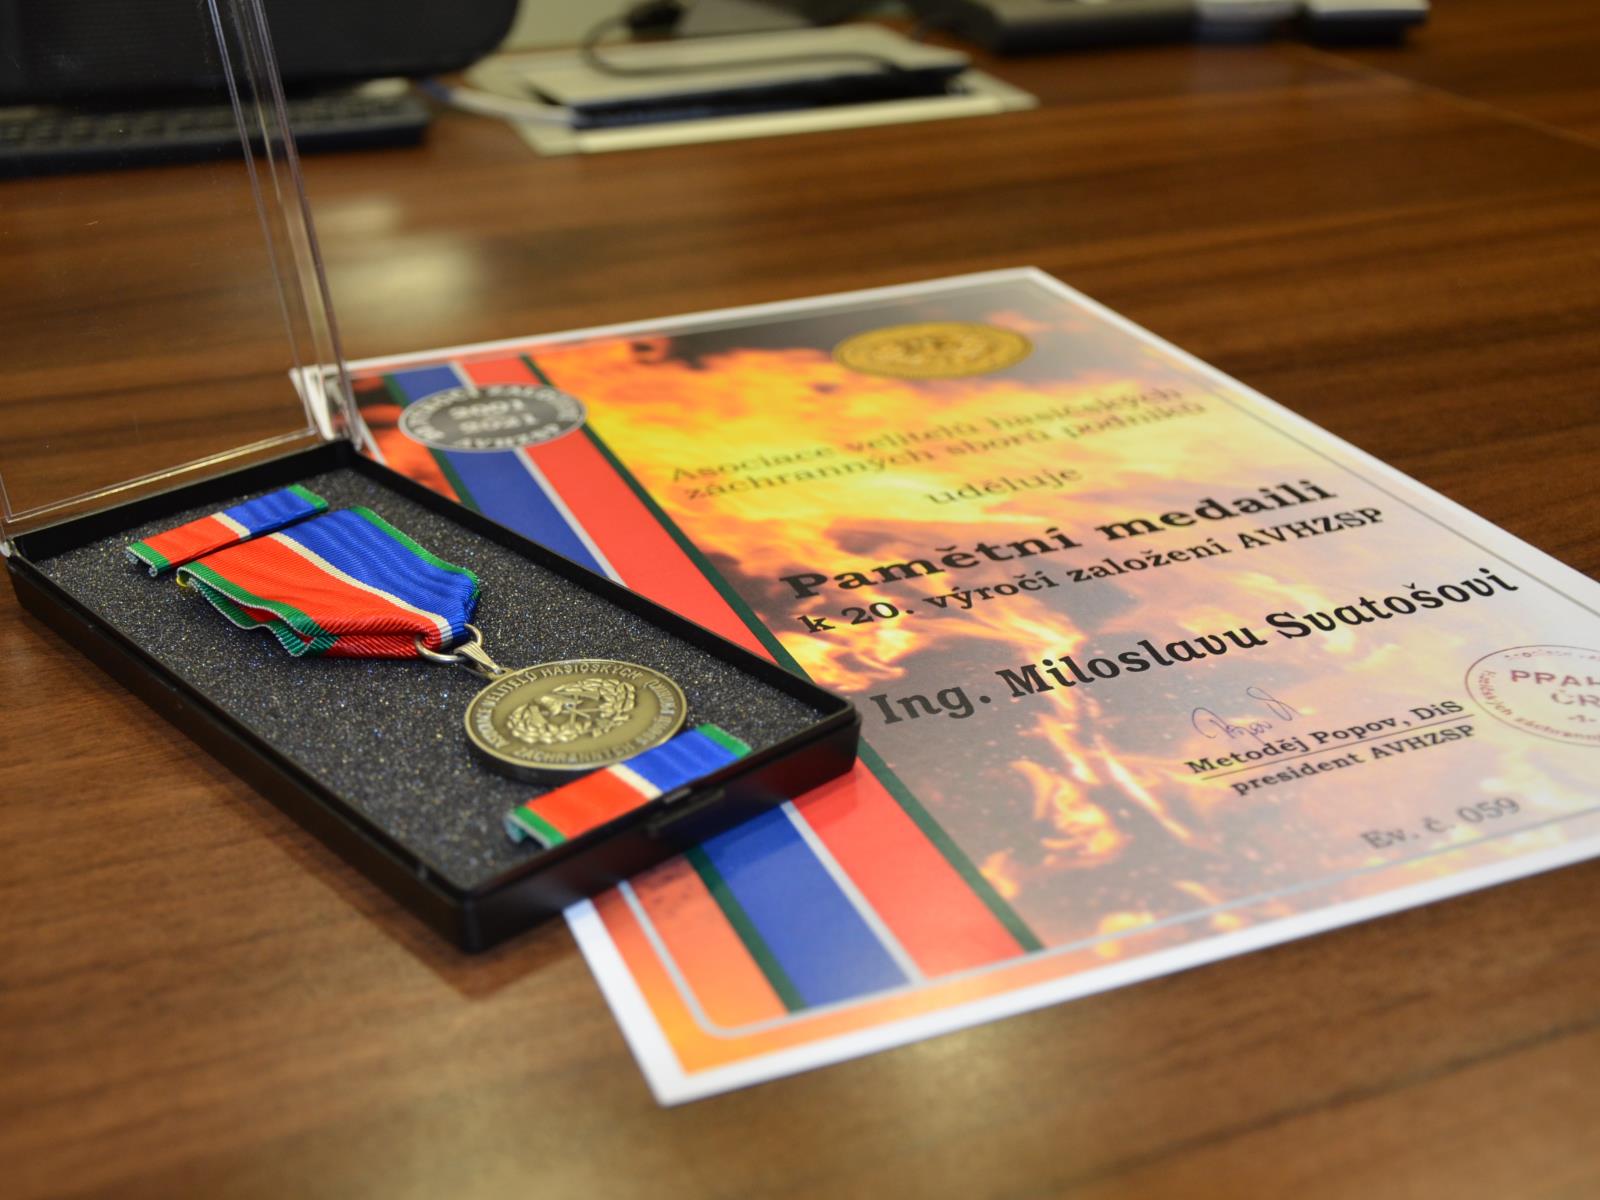 085 - Předání pamětní medaile AVHZSP.JPG